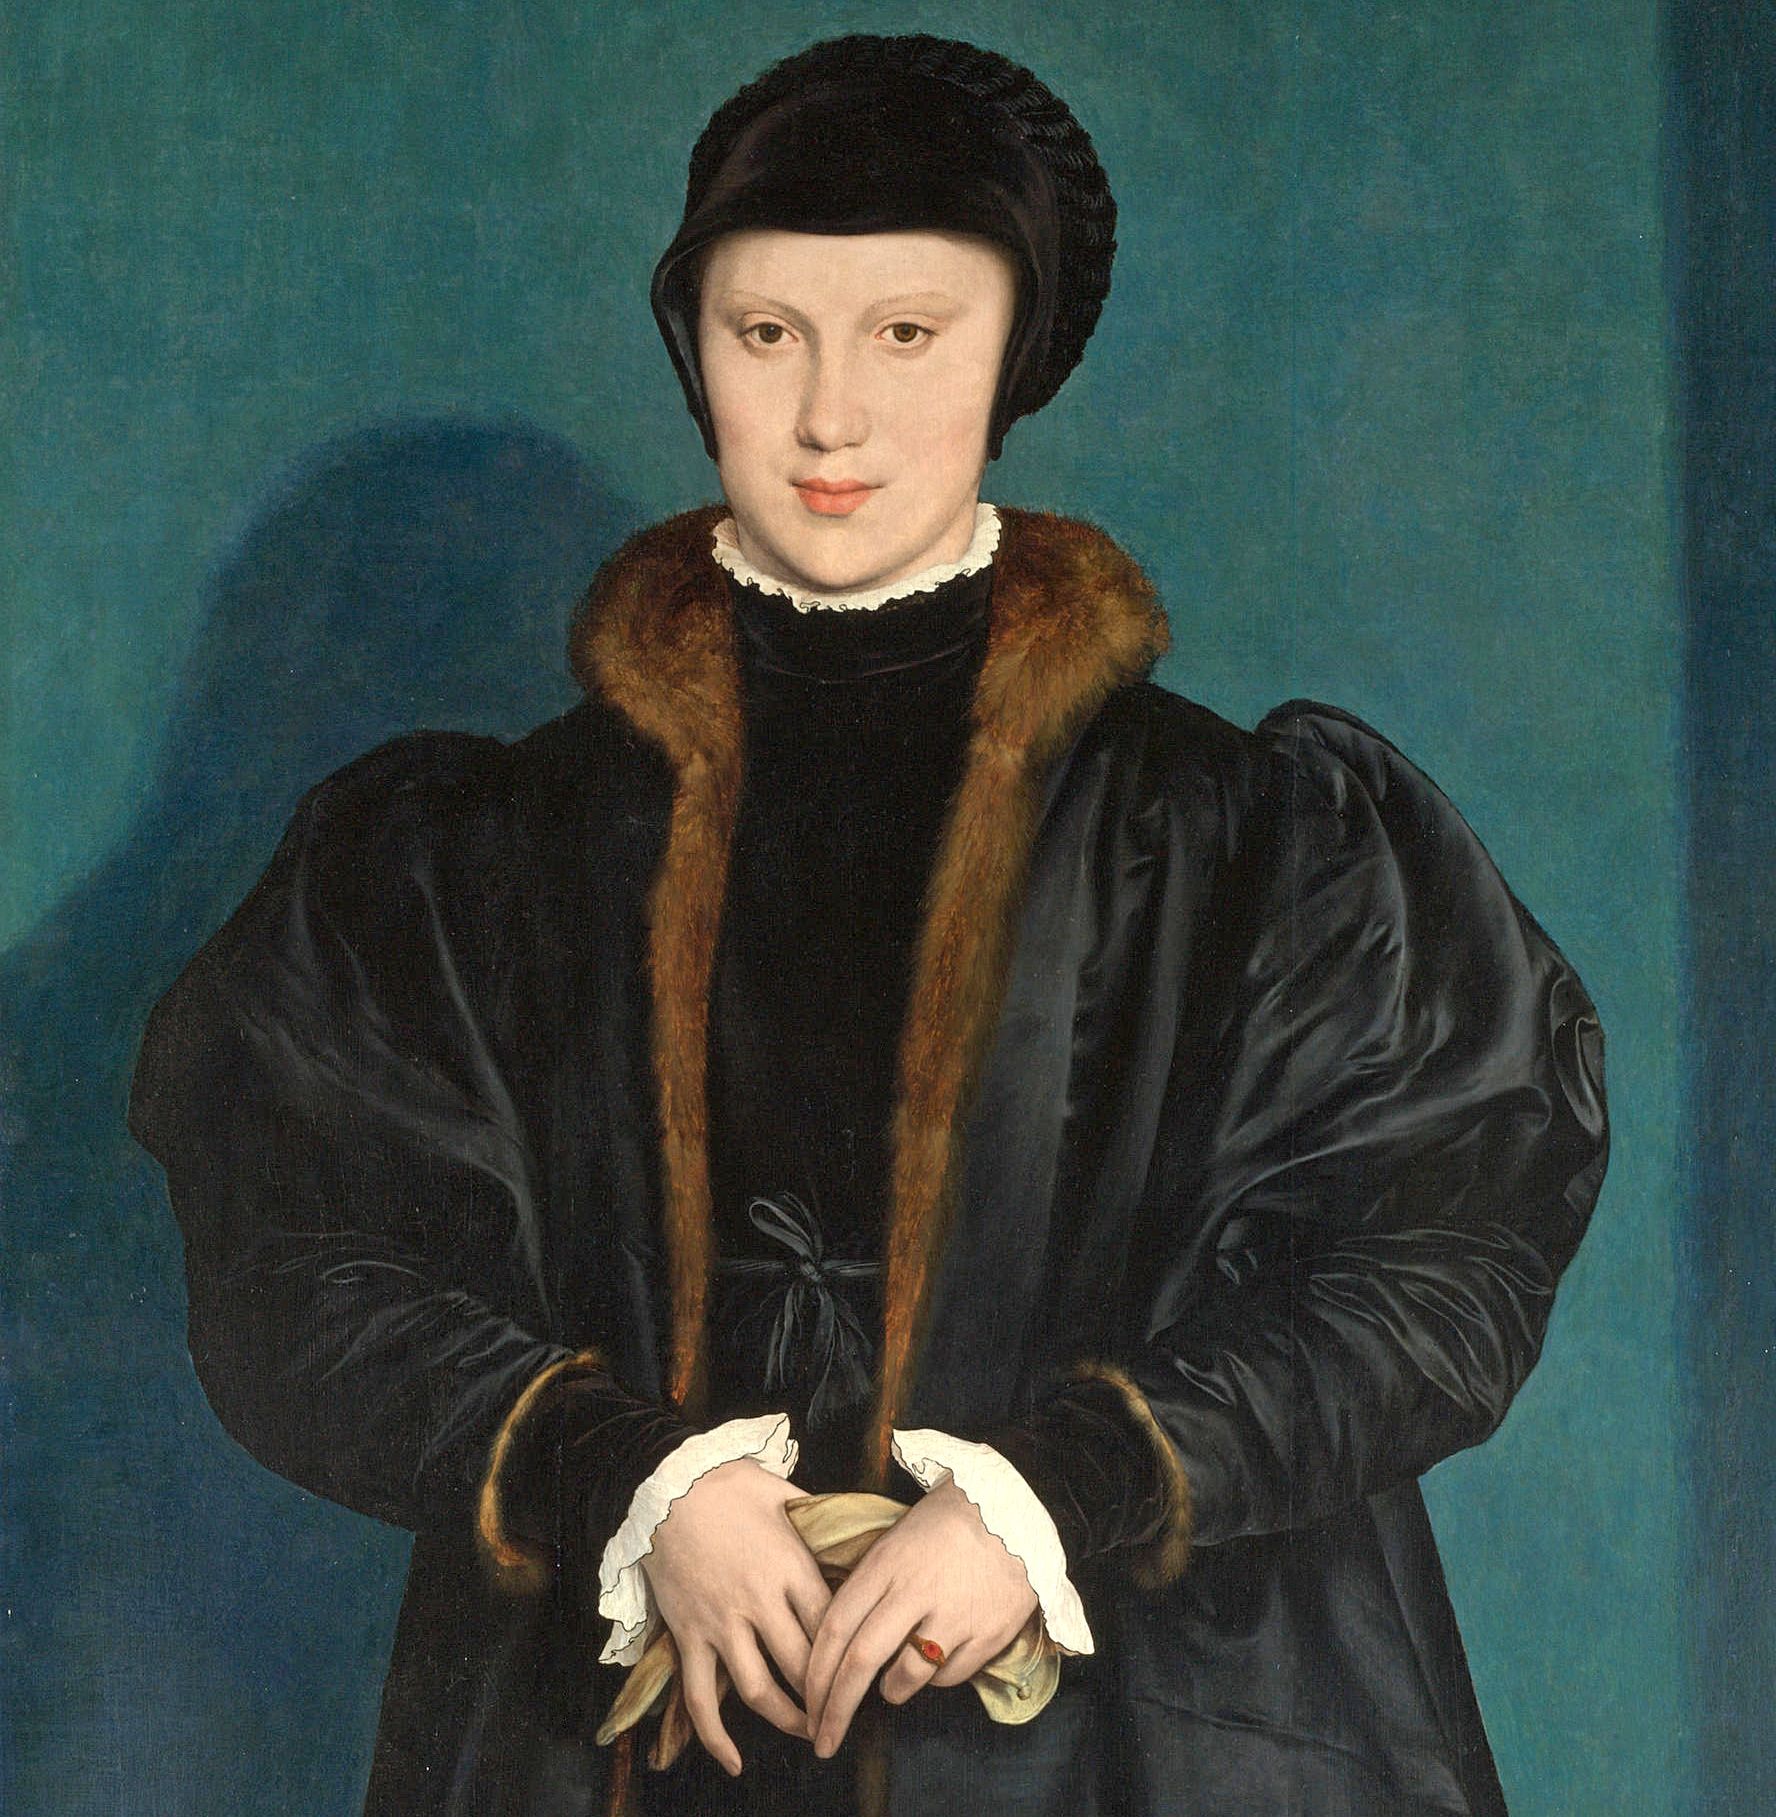 Gdy Henryk VIII zobaczył tę podobiznę księżnej Mediolanu, z miejsca się w niej zakochał. Jednak ani ona, ani jej rodzina, nie mieli ochoty na angielski mariaż. Kilka lat później dziewczyna została księżną Lotaryngii. Krystyna mediolańska, z domu księżniczka duńska, na obrazie Hansa Holbeina z 1538 roku (źródło: domena publiczna).